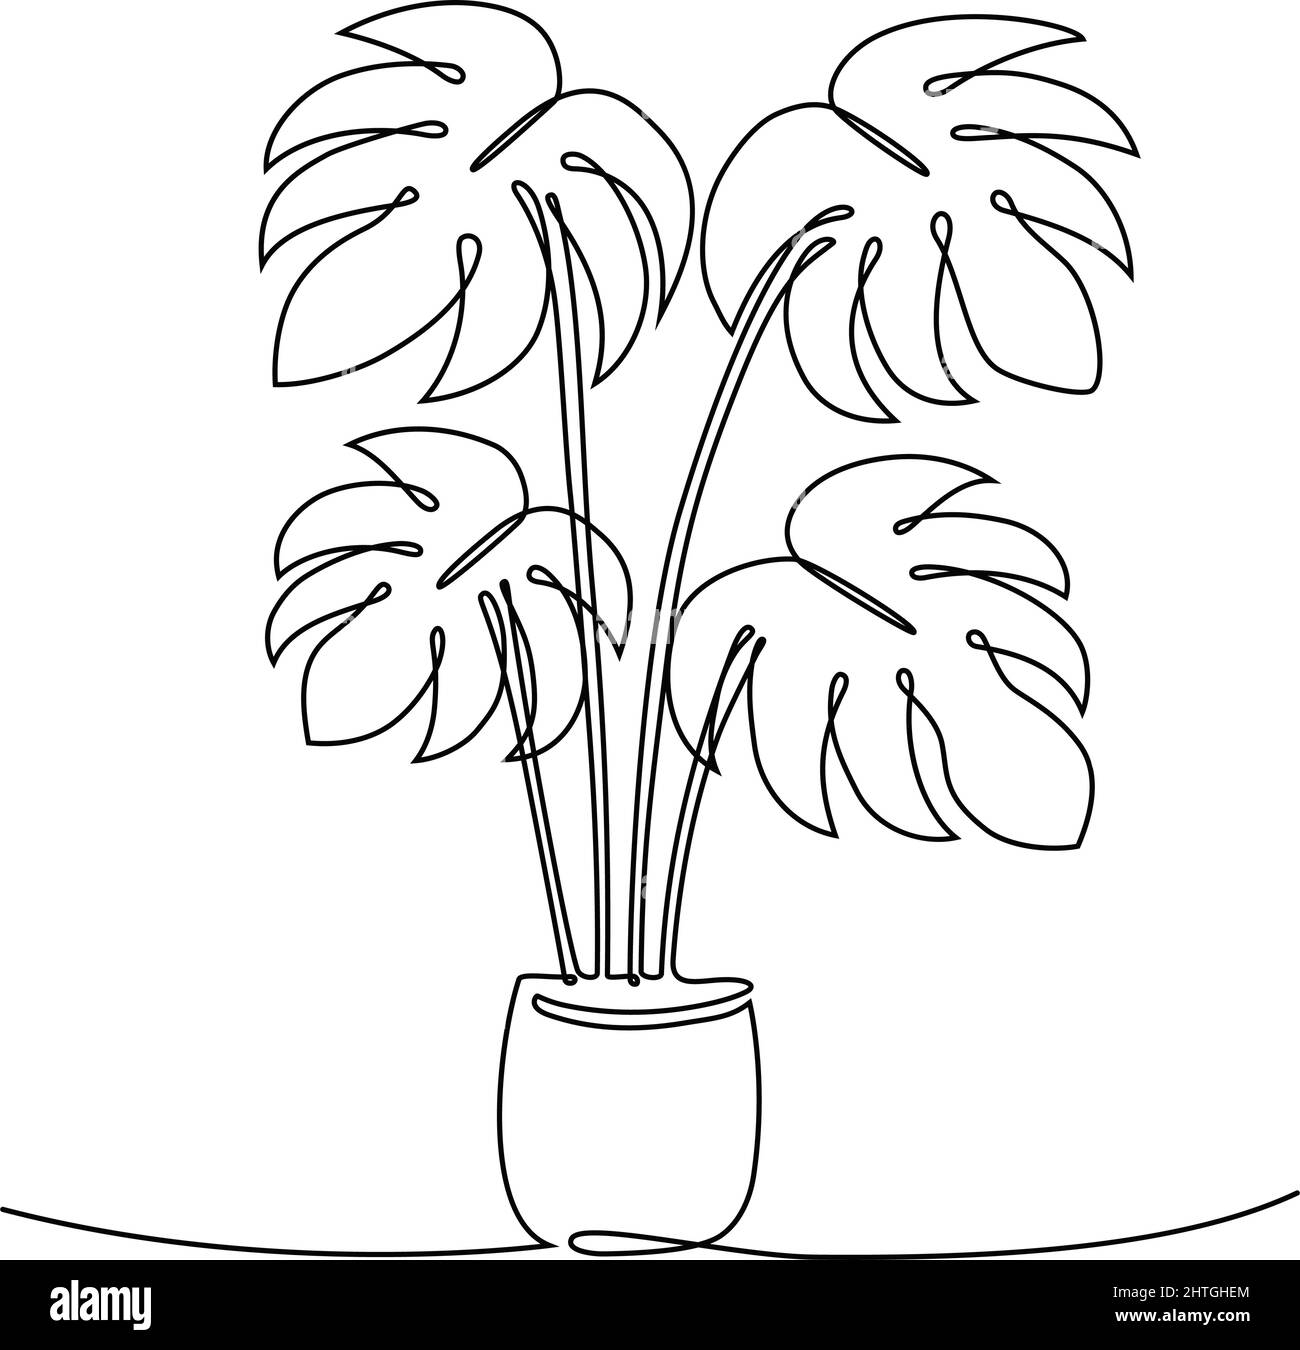 Zimmerpflanzen-Monstera in einer kontinuierlichen Linienzeichnung, Vektorgrafik Stock Vektor